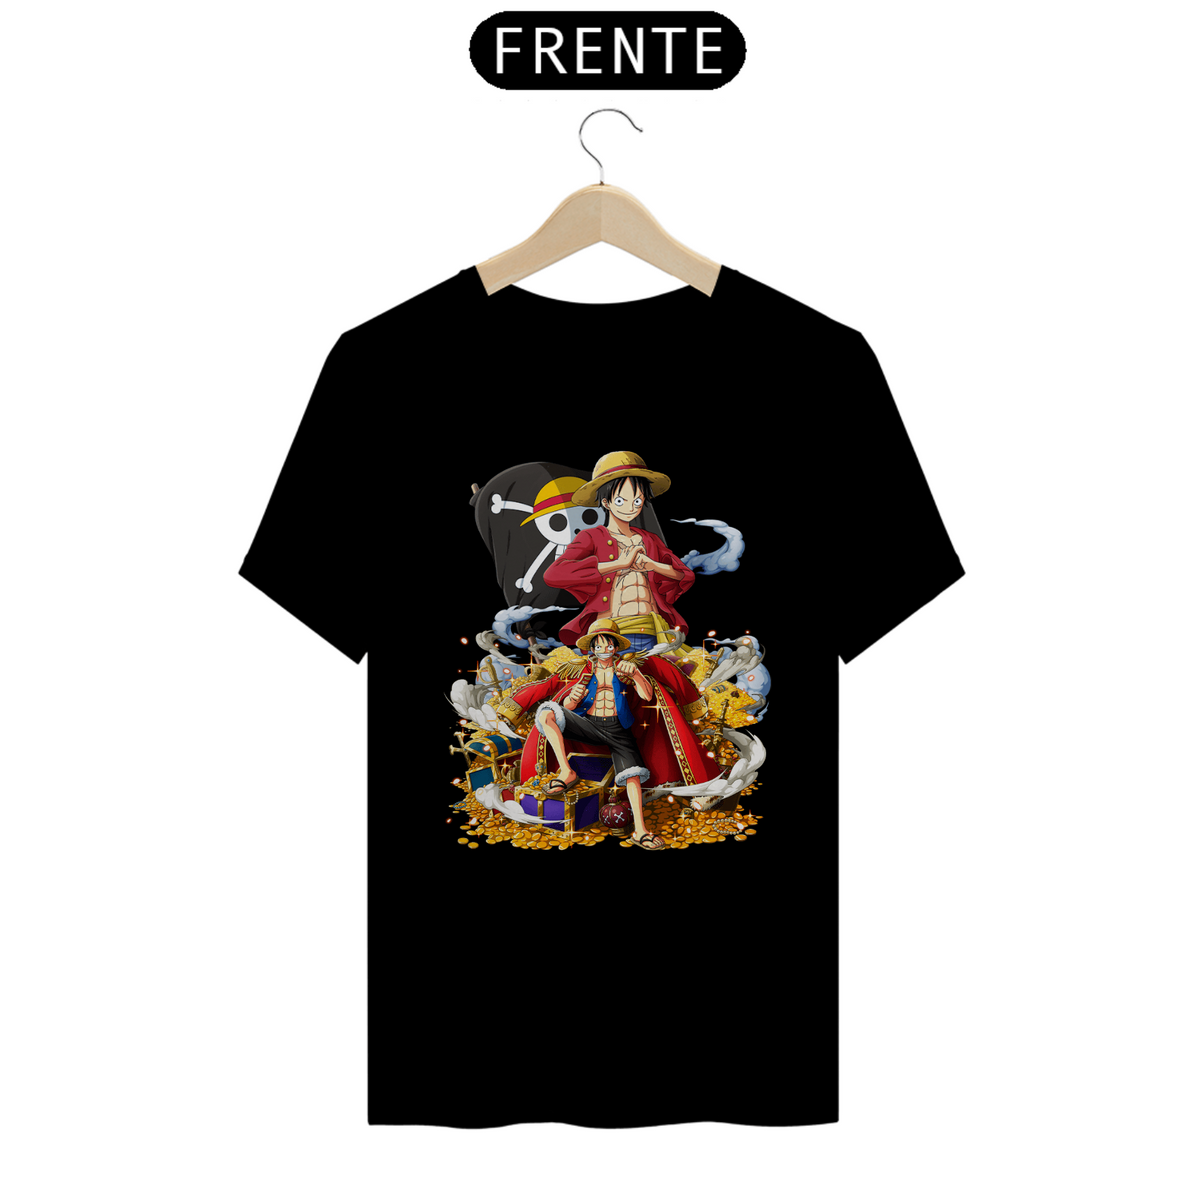 Nome do produto: Camiseta Monkey D. Luffy - One Piece